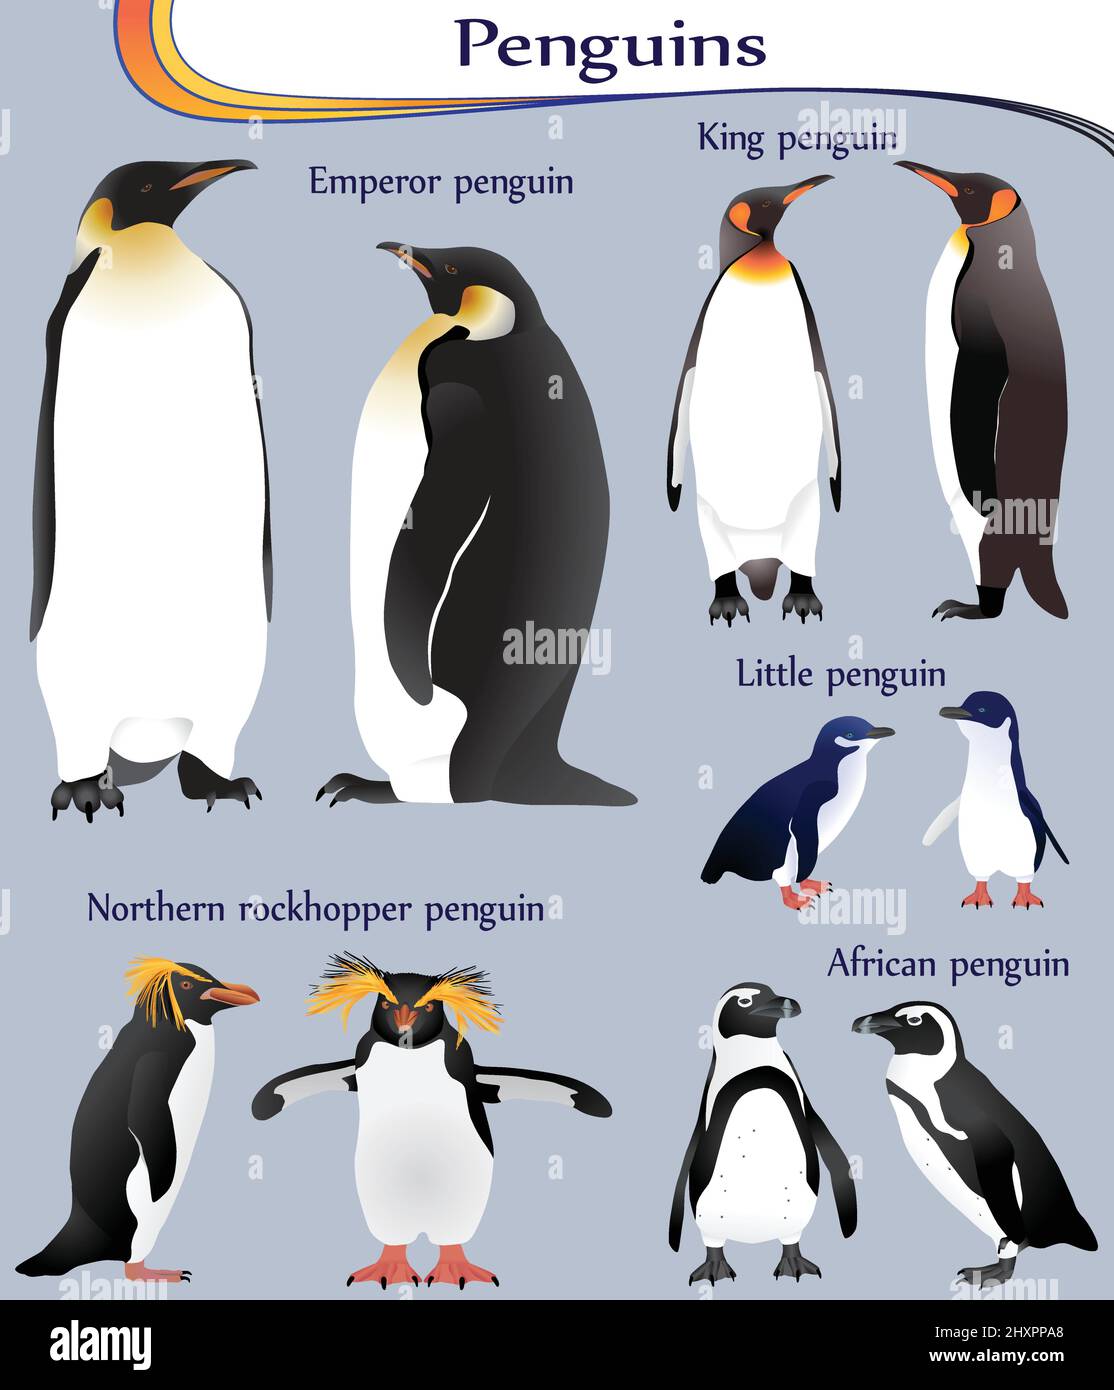 Collezione di diverse specie di pinguini a colori: imperatore, re, piccolo, africano, rockhopper settentrionale Illustrazione Vettoriale